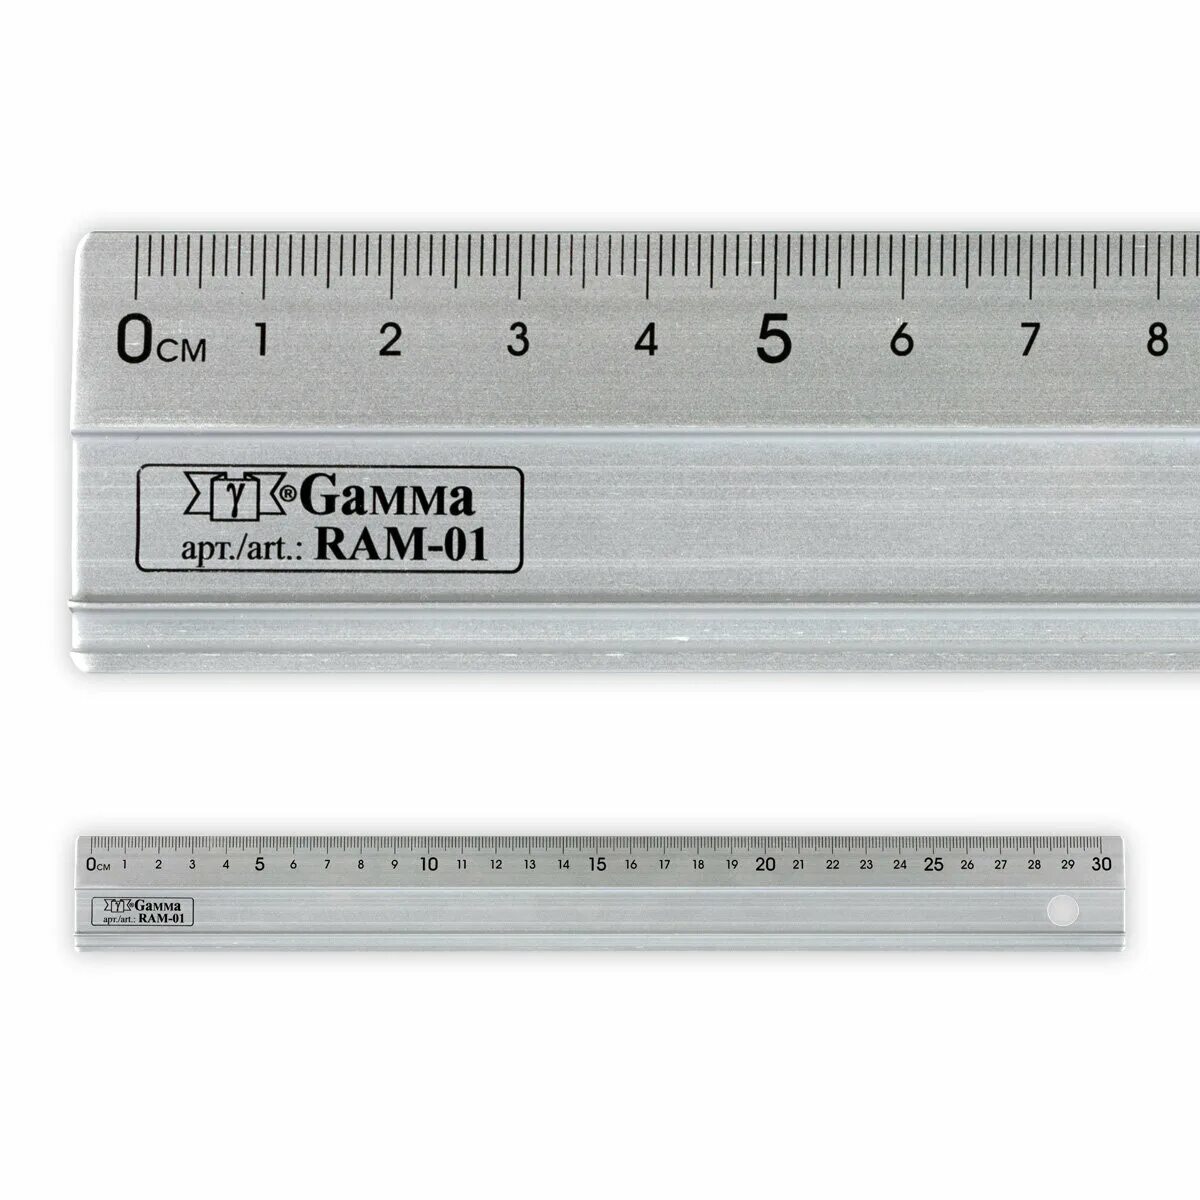 Фирмы линеек. Gamma универсальная линейка RM-001. Линейка алюминиевая. Многофункциональная линейка. Линейка алюминиевая 50 см.